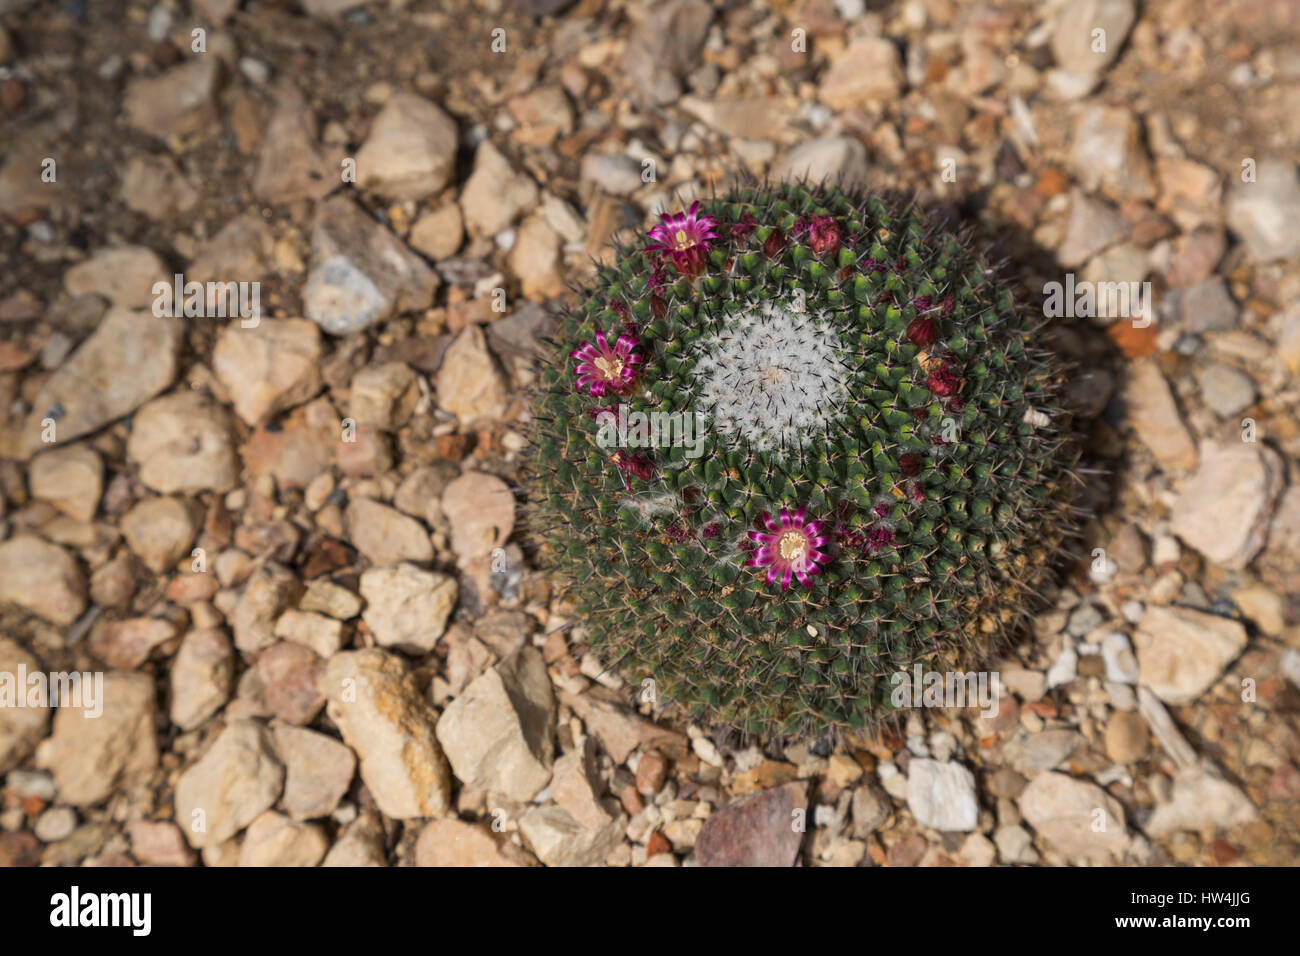 Pincushion Cactus (Mammillaria mystax), San Antonio, TX, USA Stock Photo